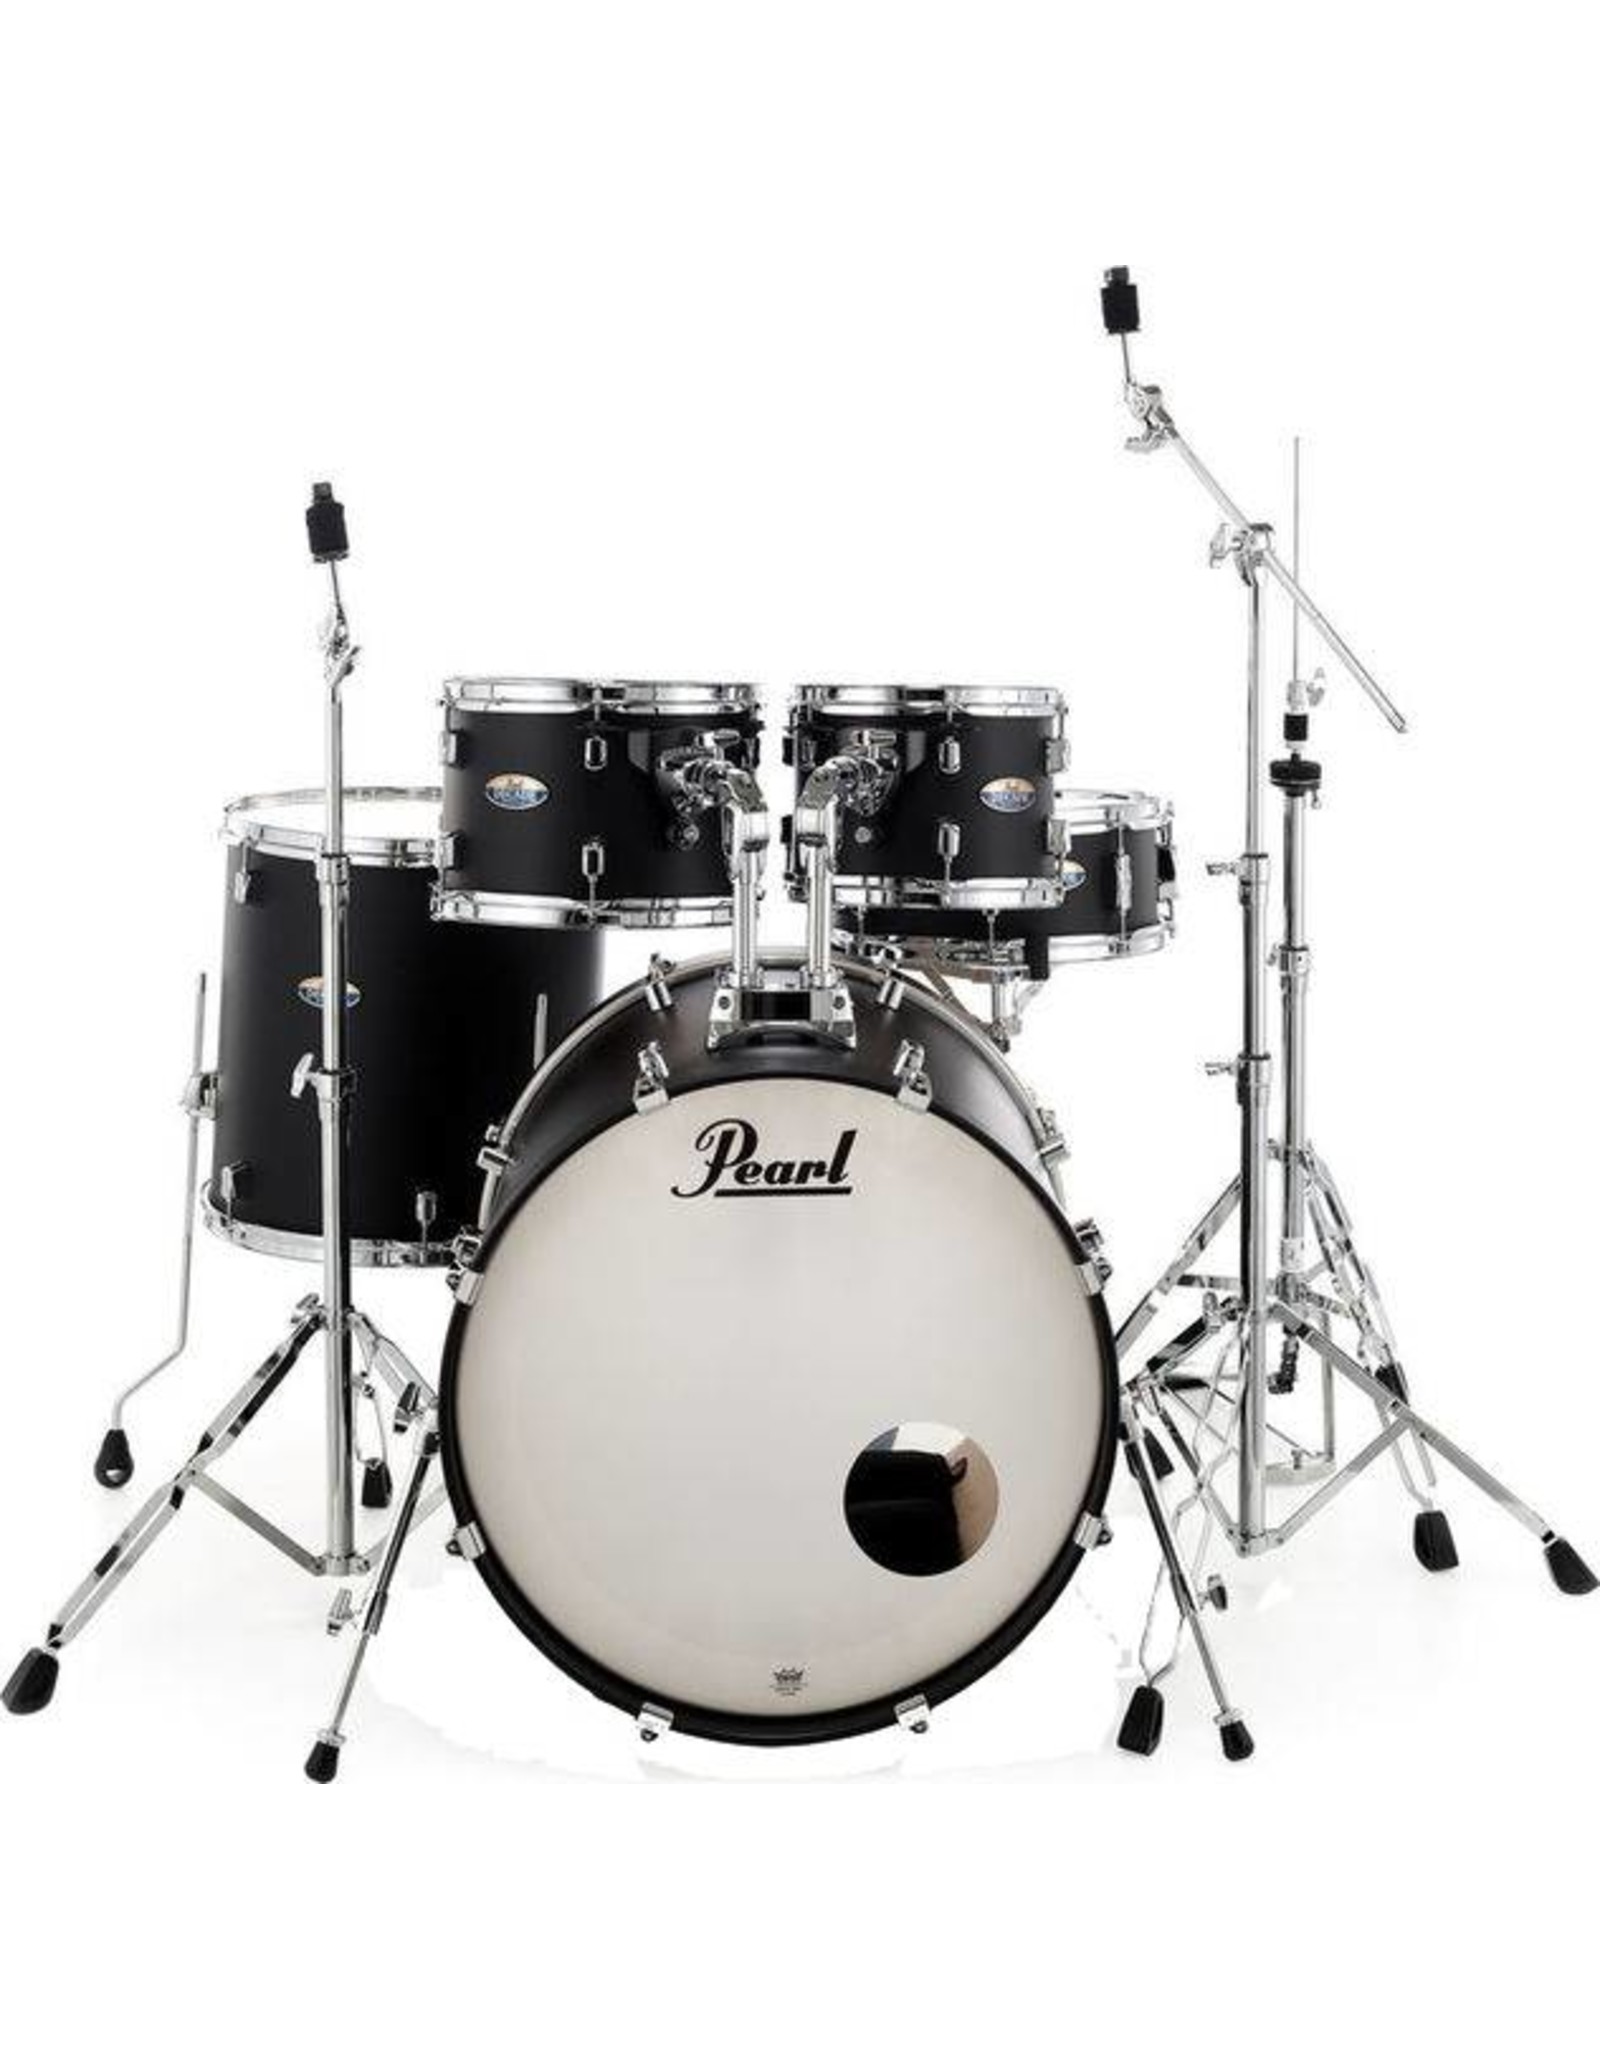 Pearl DMP925S / C227 JAHRZEHNT Satin Black Slate Drums inkl. HWP830 Hardware Pack